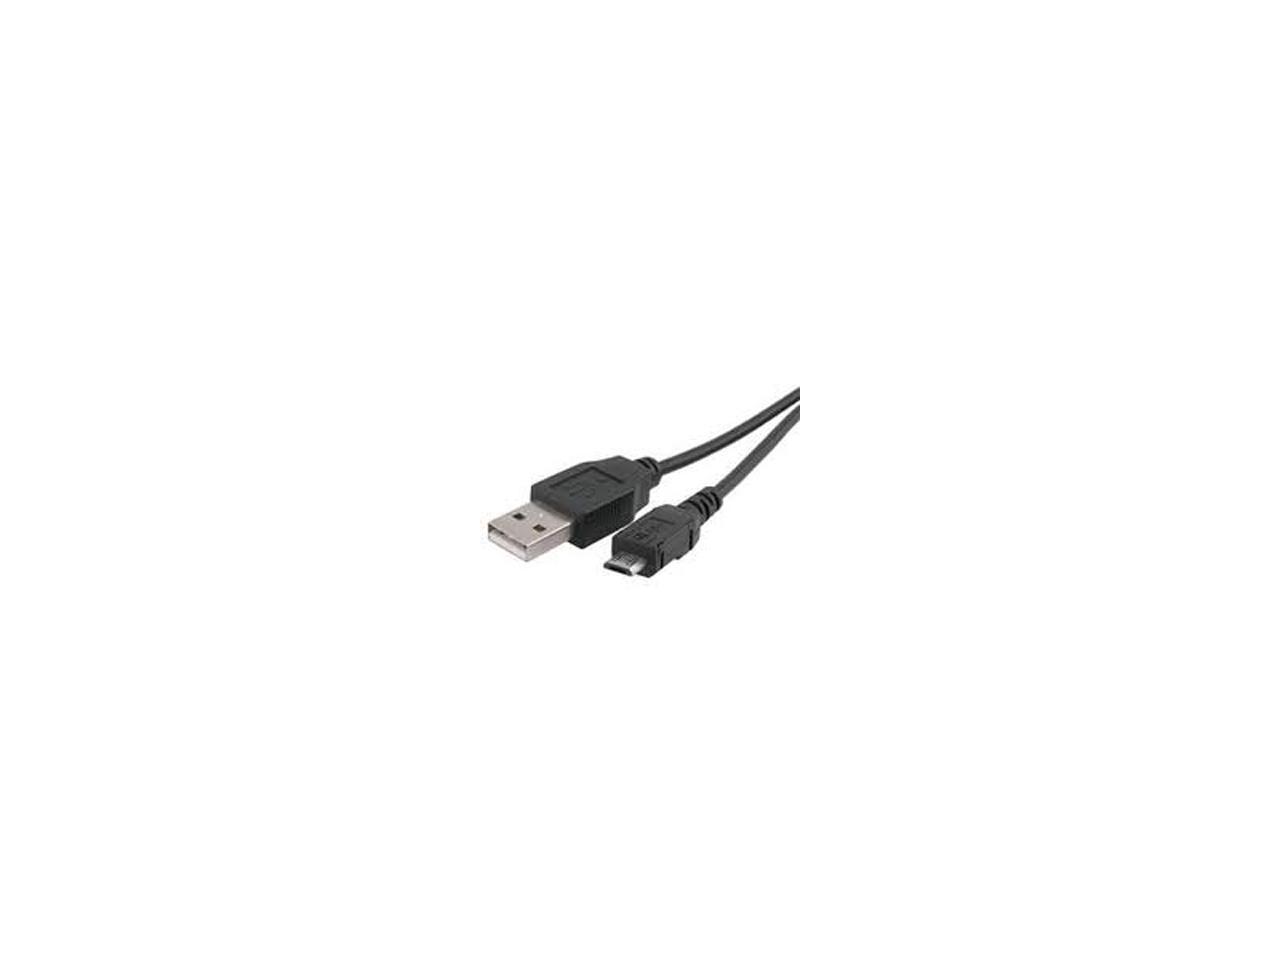 A805 DIGITAL CAMERA USB CABLE CORD A610 A800 FUJIFILM FINEPIX A605 FUJI 